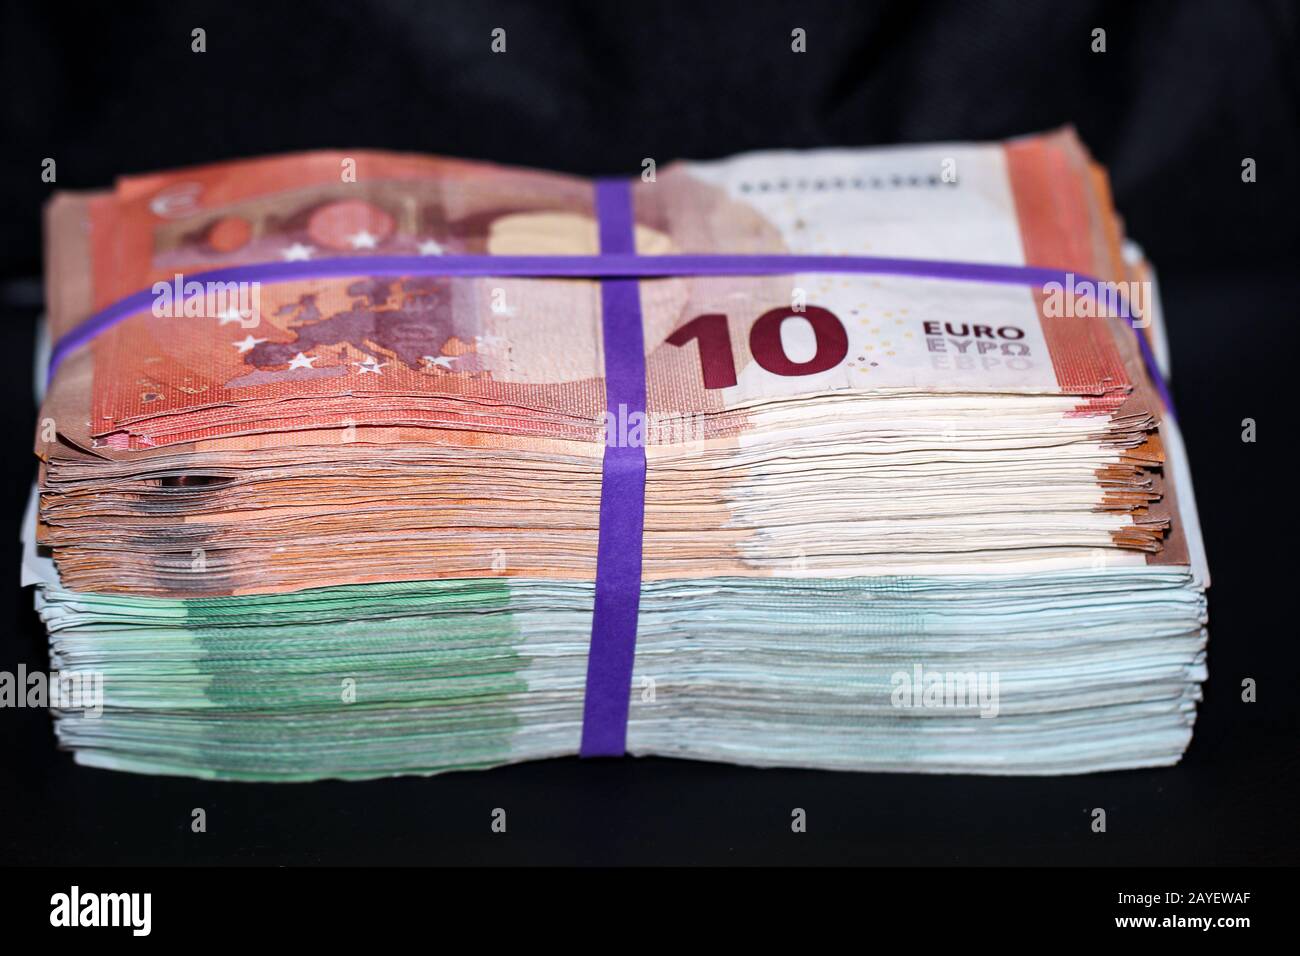 Mehrere tausend Euro in Banknoten, auf einem Stapel gebündelte Banknoten  Stockfotografie - Alamy